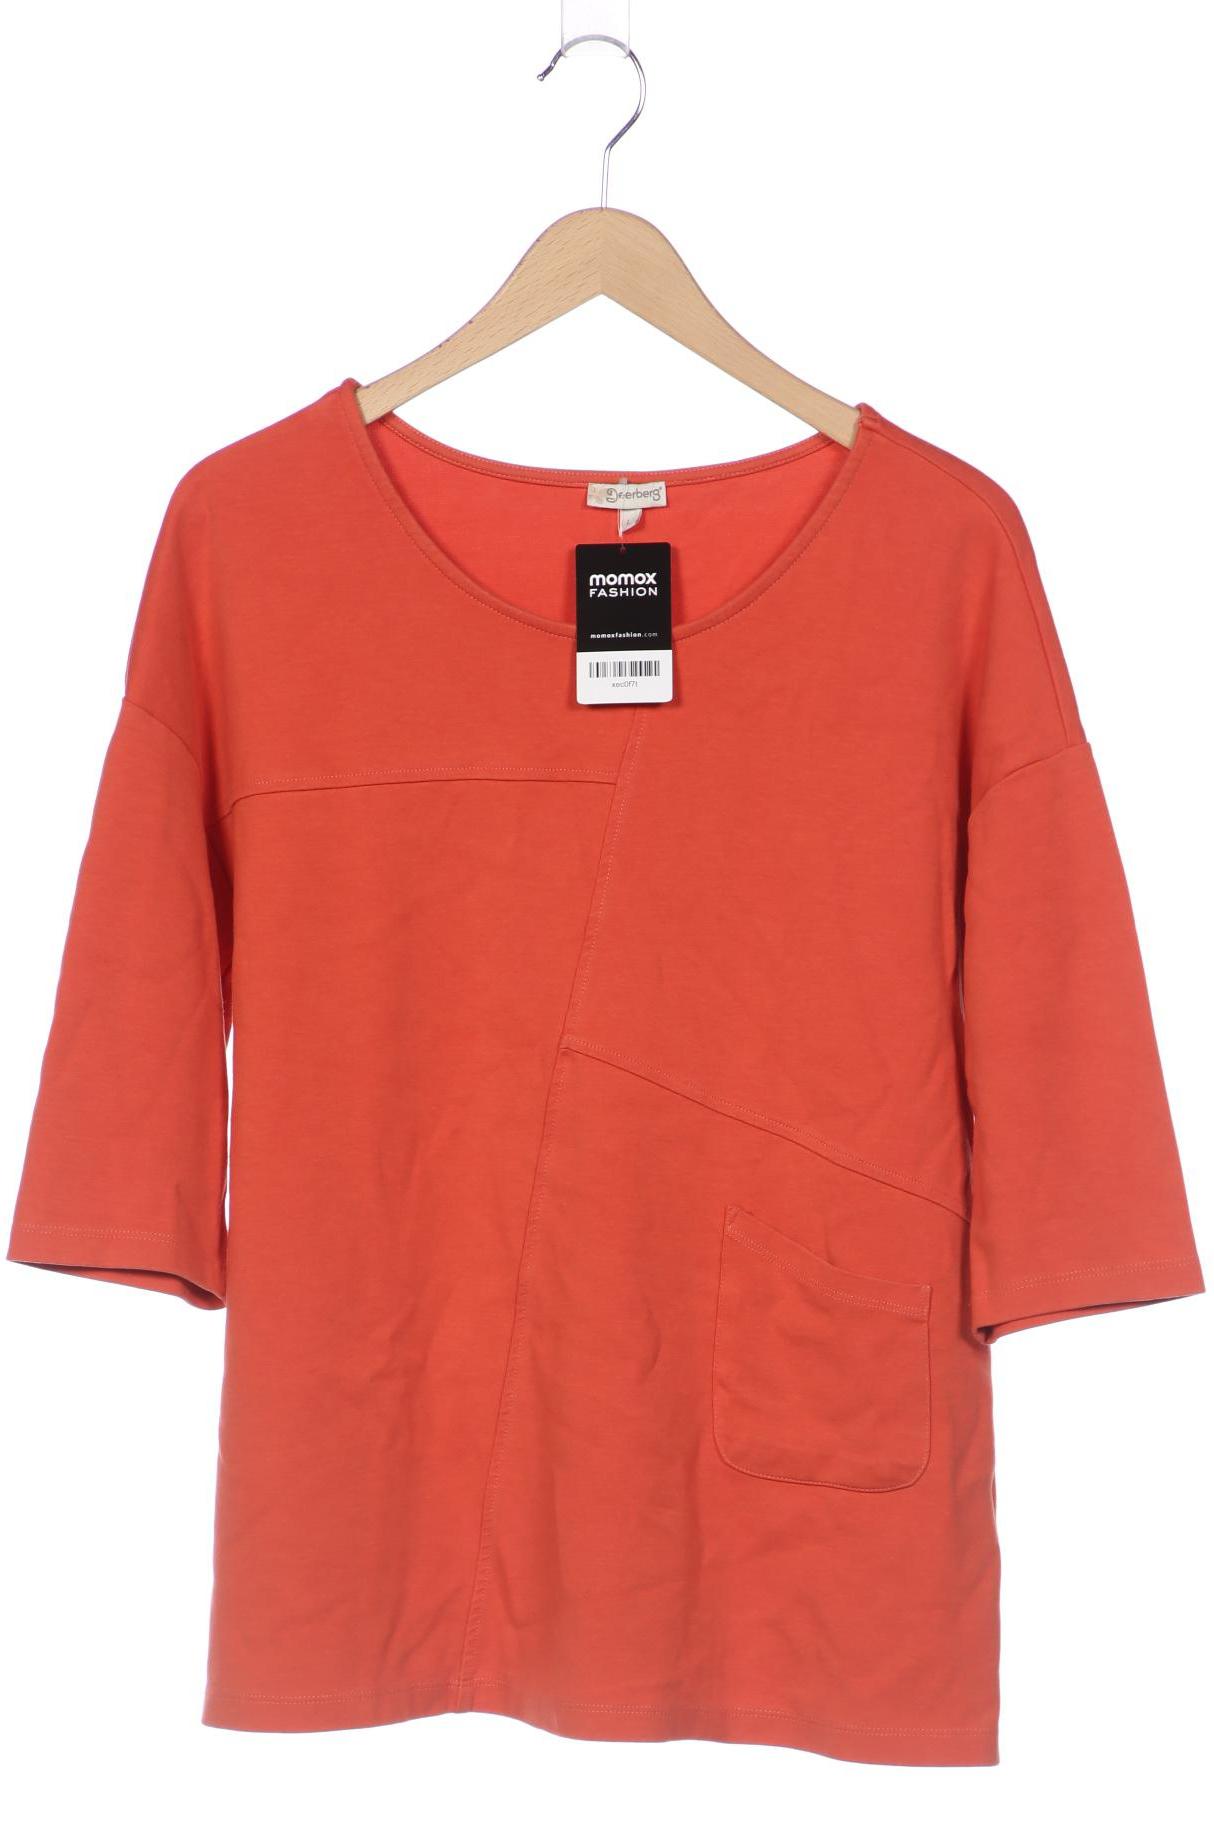 Deerberg Damen Sweatshirt, orange von Deerberg